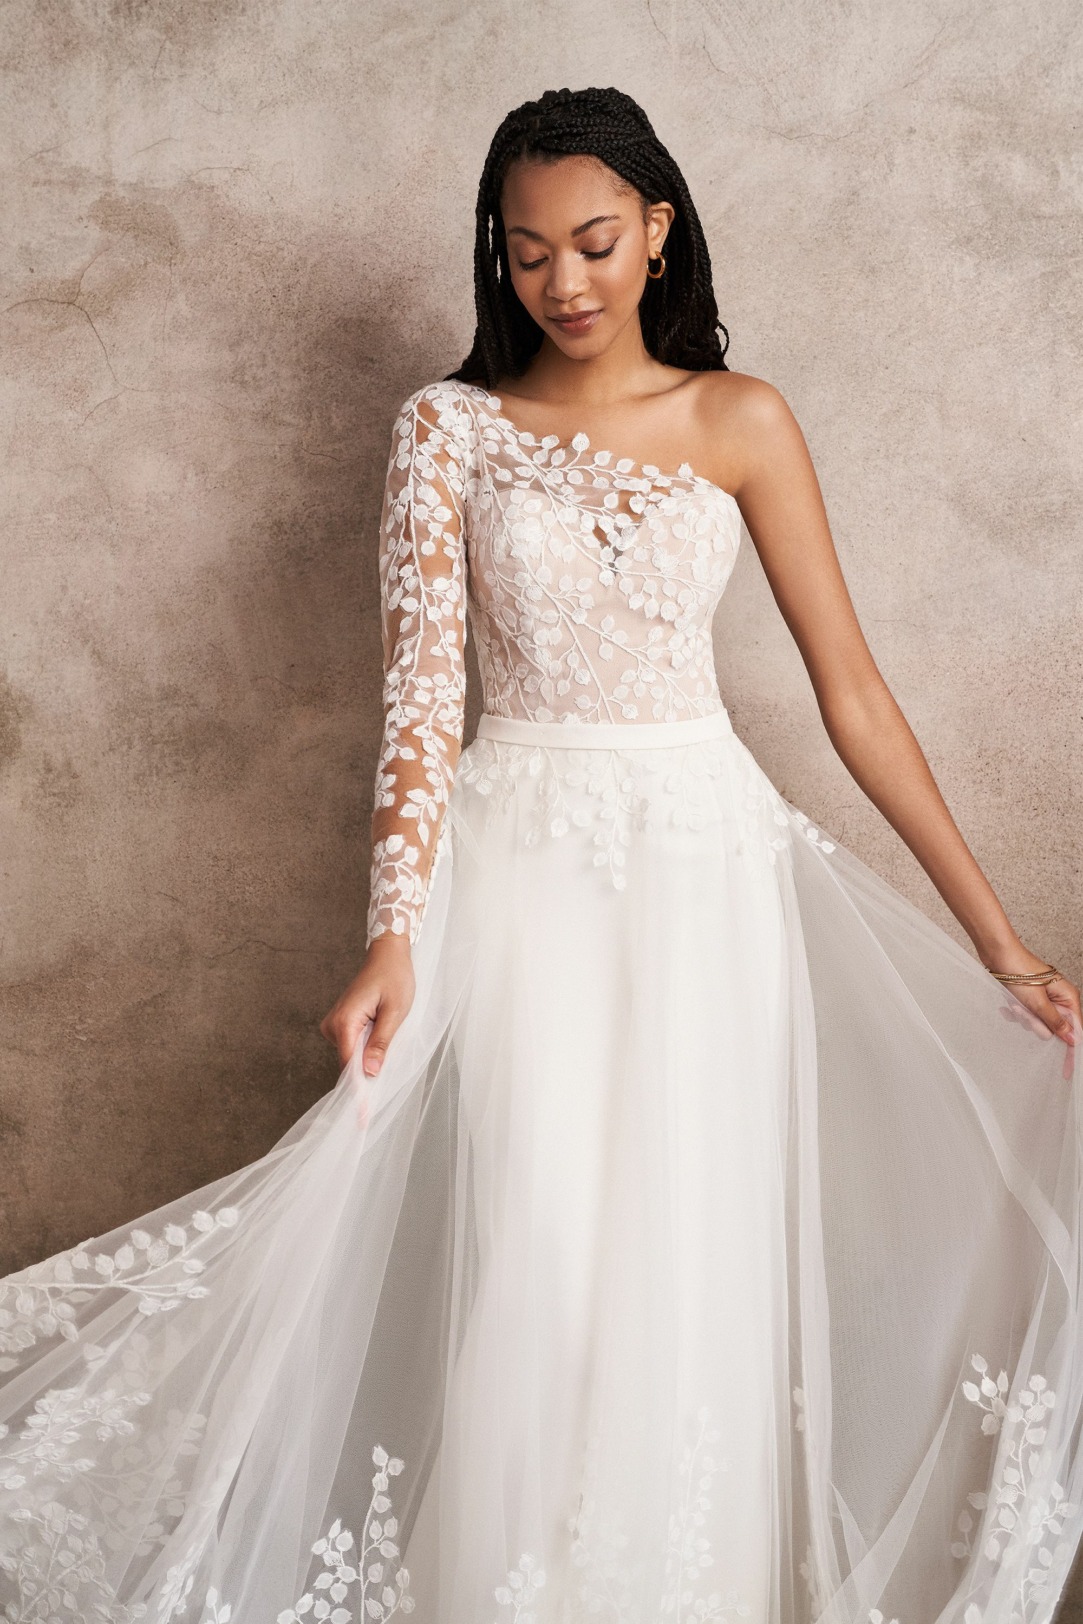 Hochzeitskleider Brautkleider im Fit'n Flare Stil Modell 66223sk ein absoluter Hingucker ist dieses Oneshoulder Kleid mit abnehmbarem Tüllrock